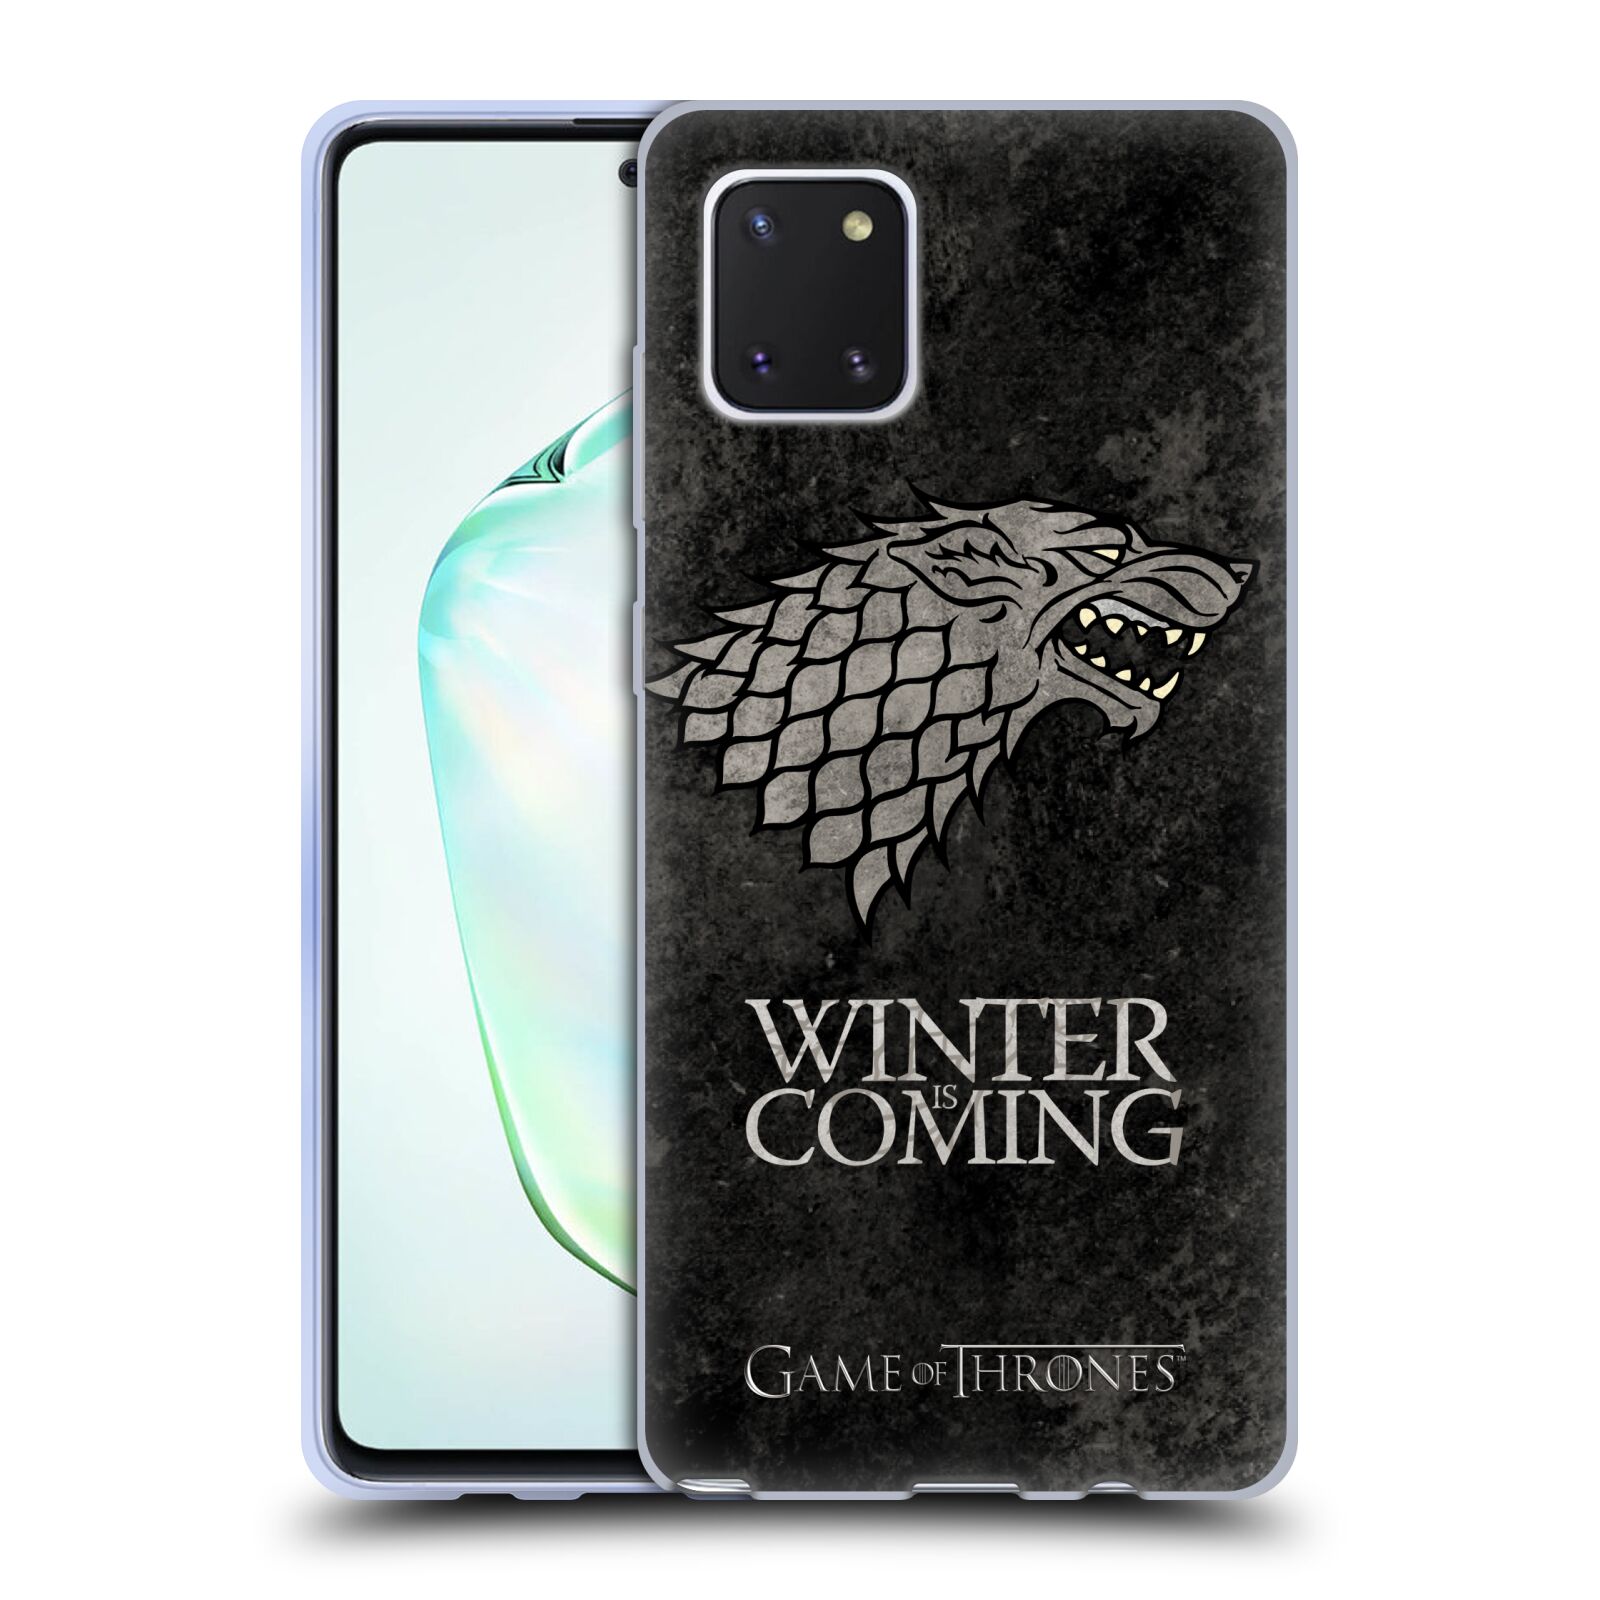 Silikonové pouzdro na mobil Samsung Galaxy Note 10 Lite - Head Case - Hra o trůny - Stark - Winter is coming